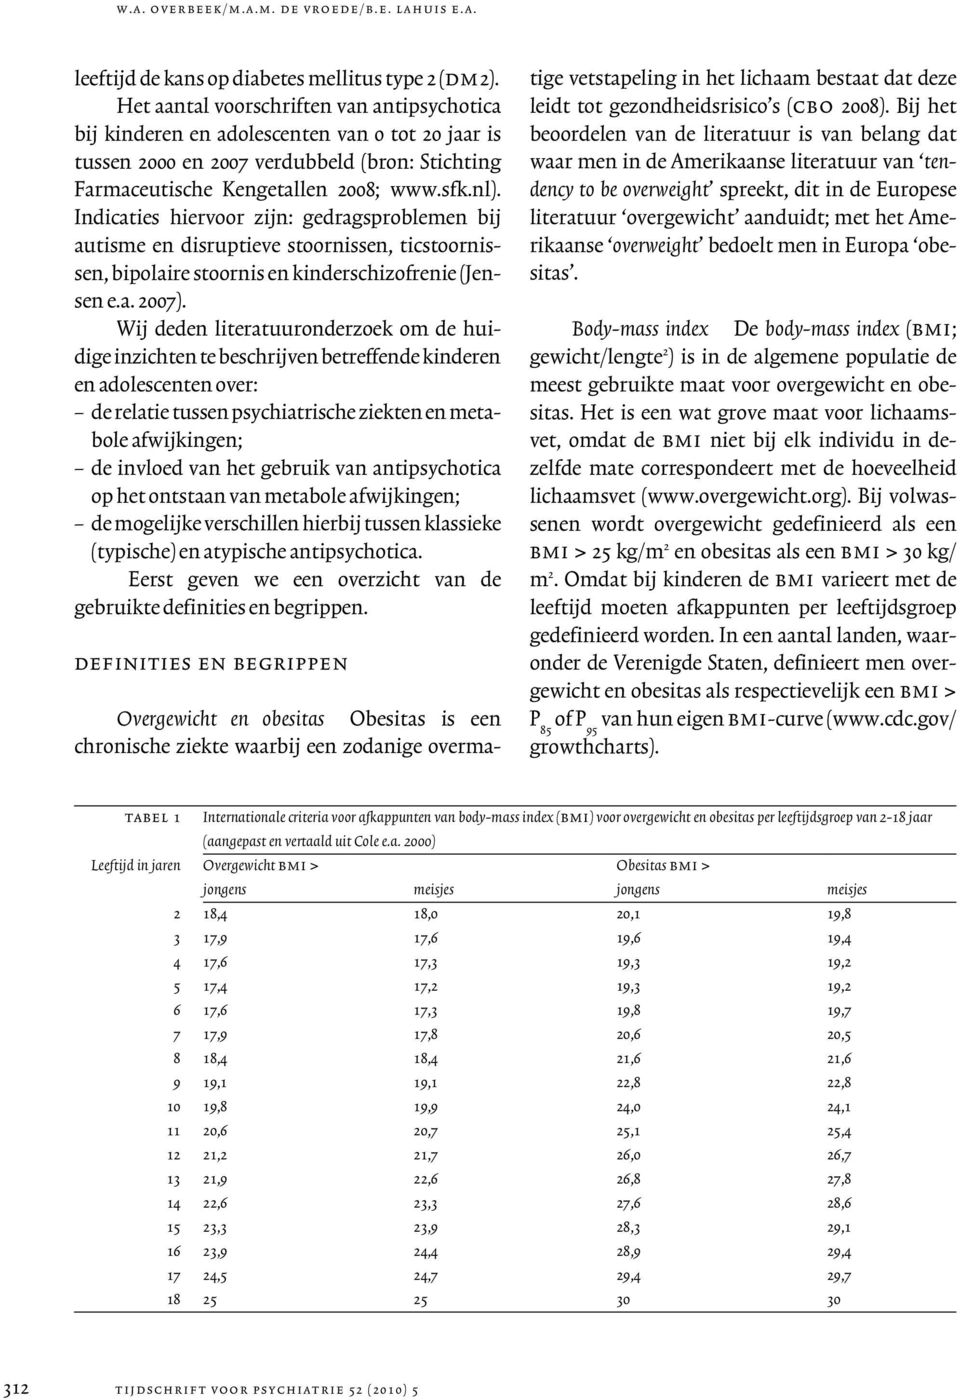 Indicaties hiervoor zijn: gedragsproblemen bij autisme en disruptieve stoornissen, ticstoornissen, bipolaire stoornis en kinderschizofrenie (Jensen e.a. 2007).